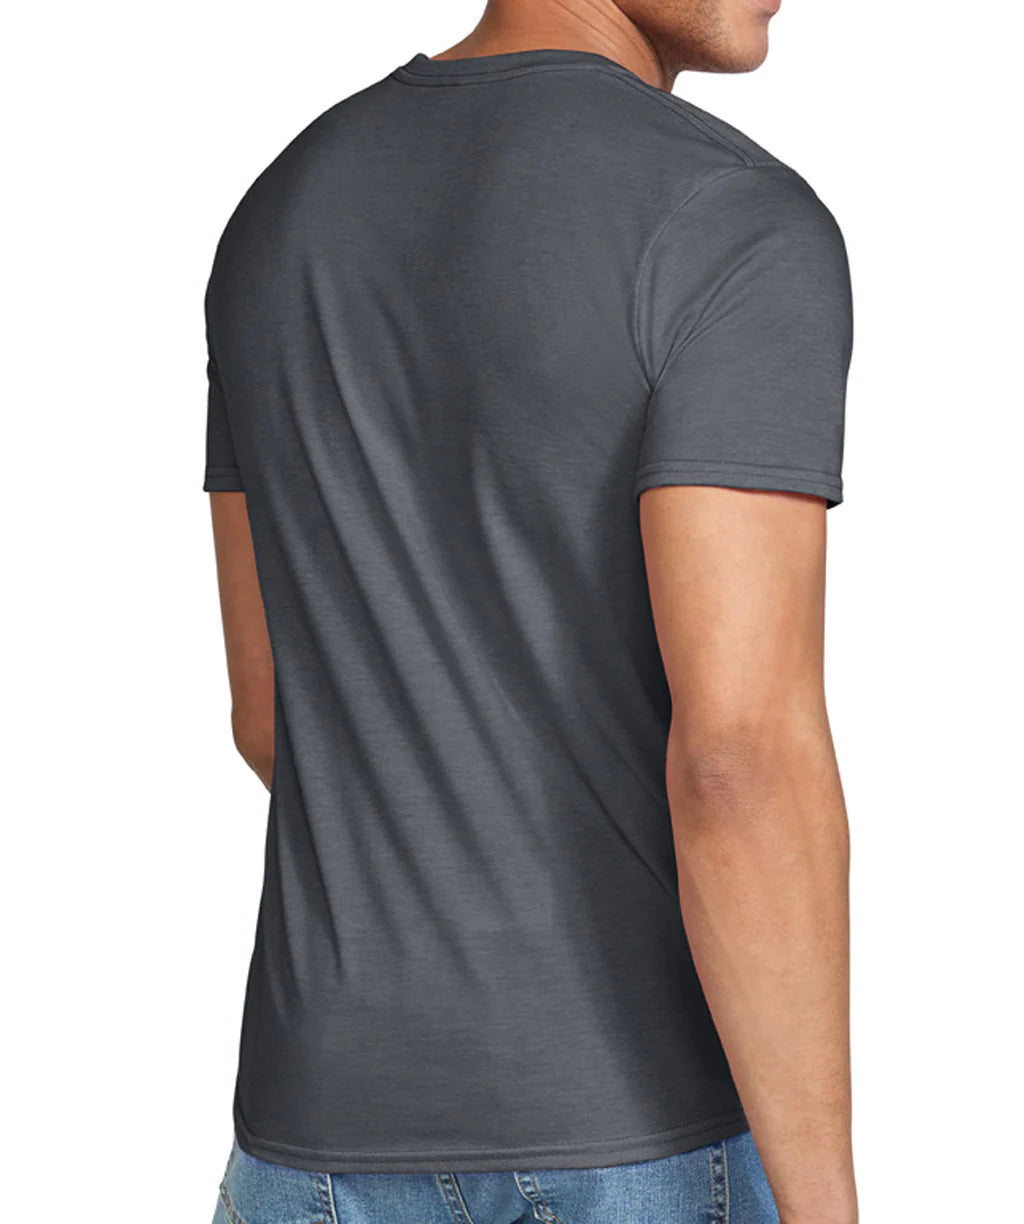 Gildan 6400 Soft Value Tshirt (40-59 Shirts)